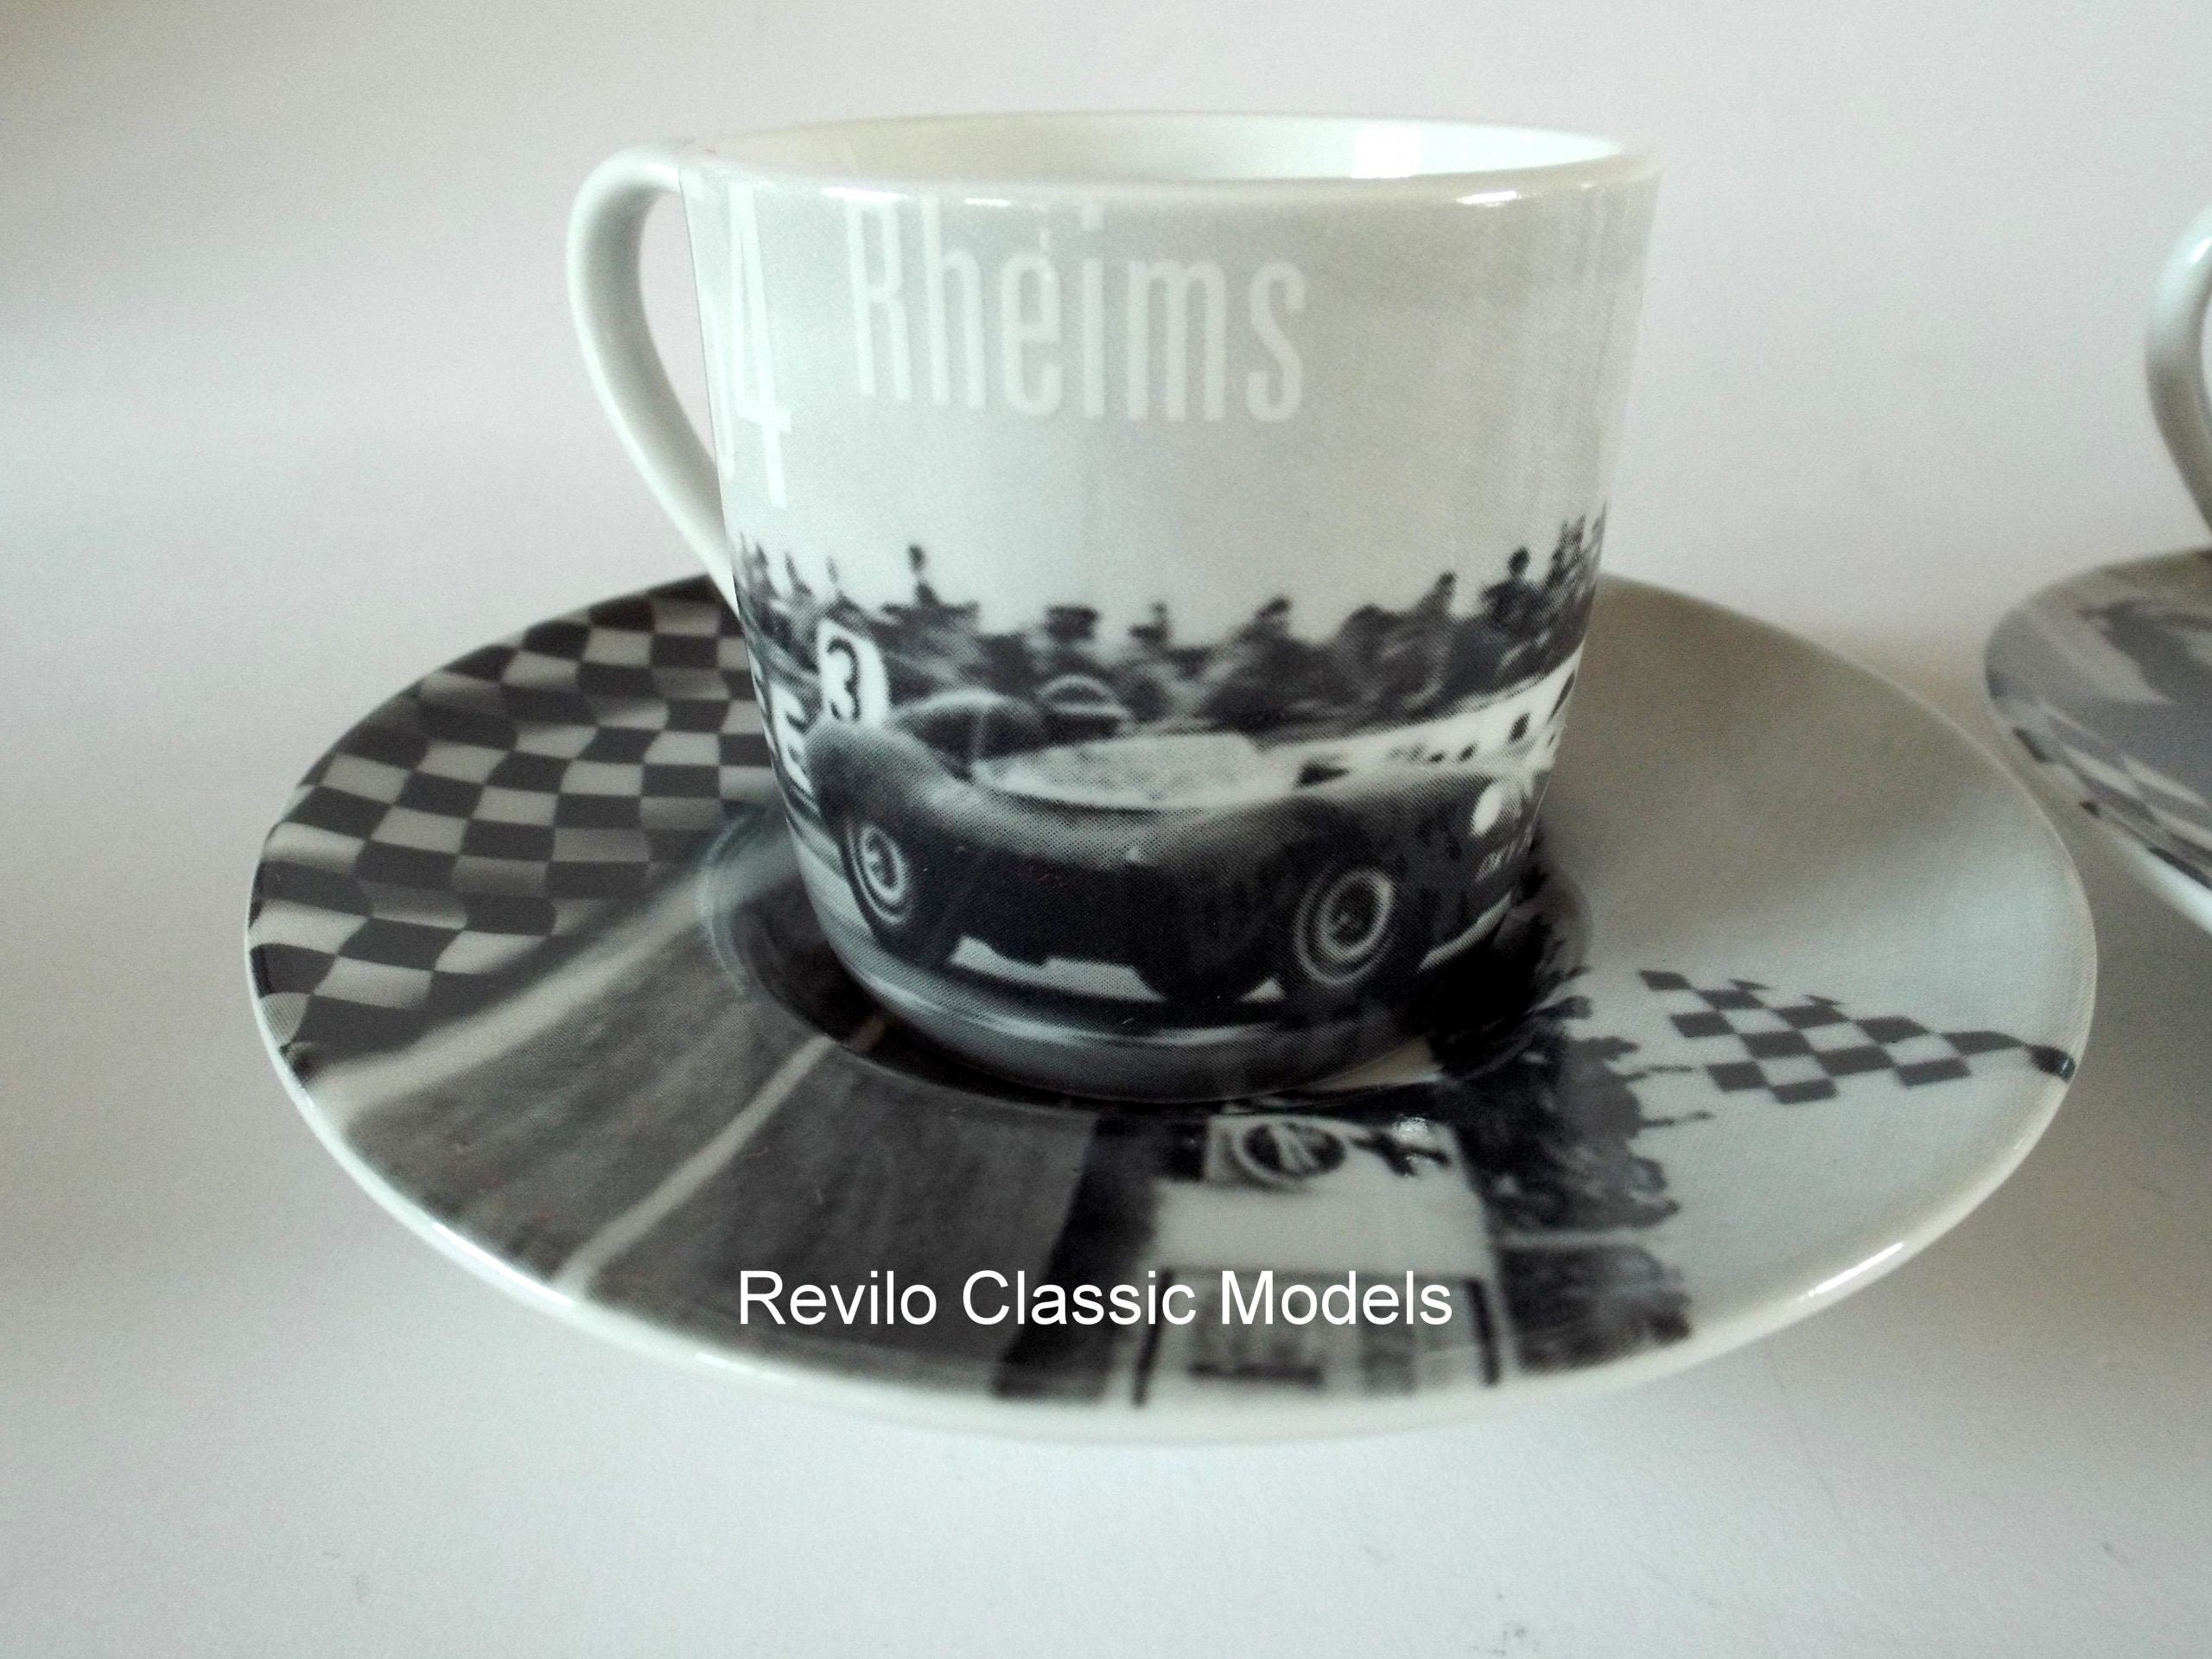 Jaguar Le Mans/Rheims Espresso Set